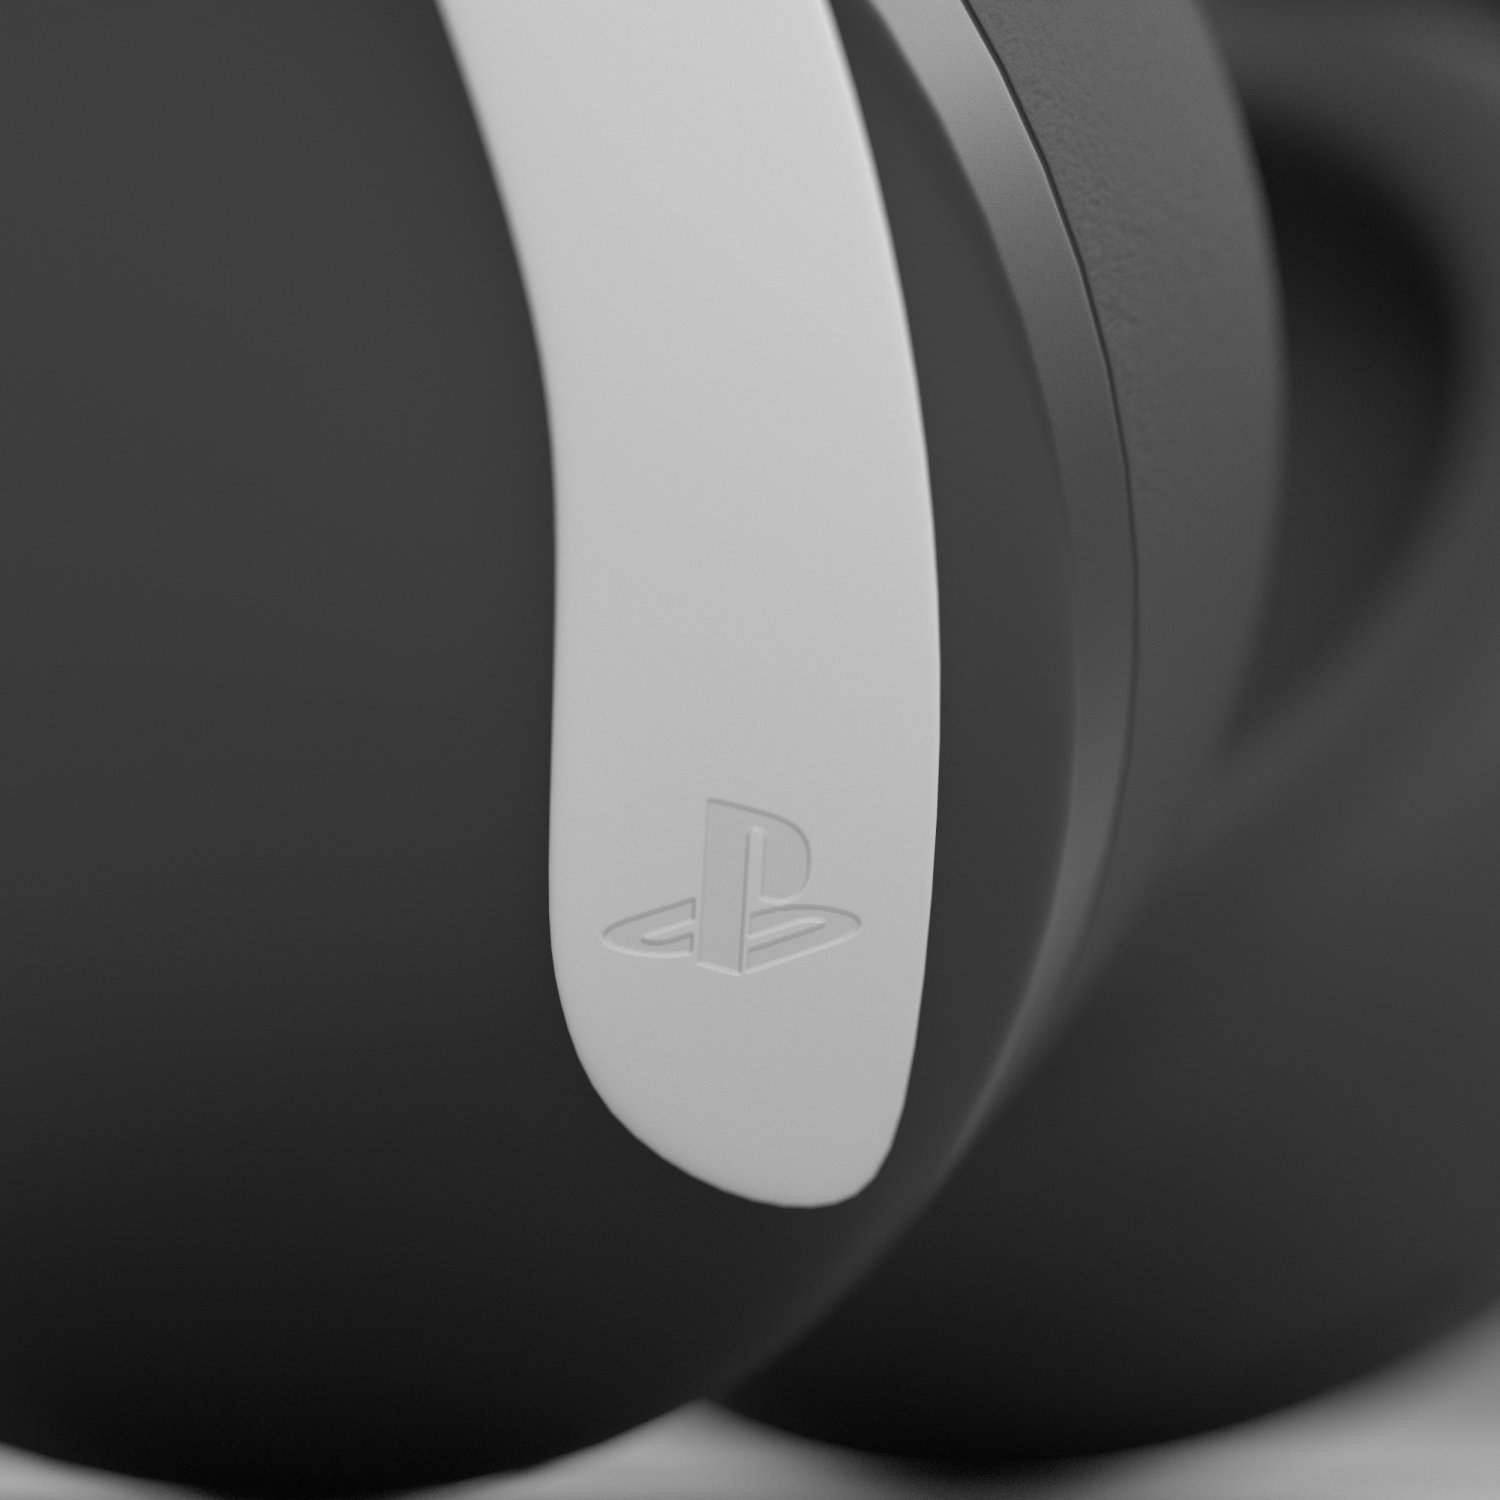 Sony Pulse Explore 3D model download